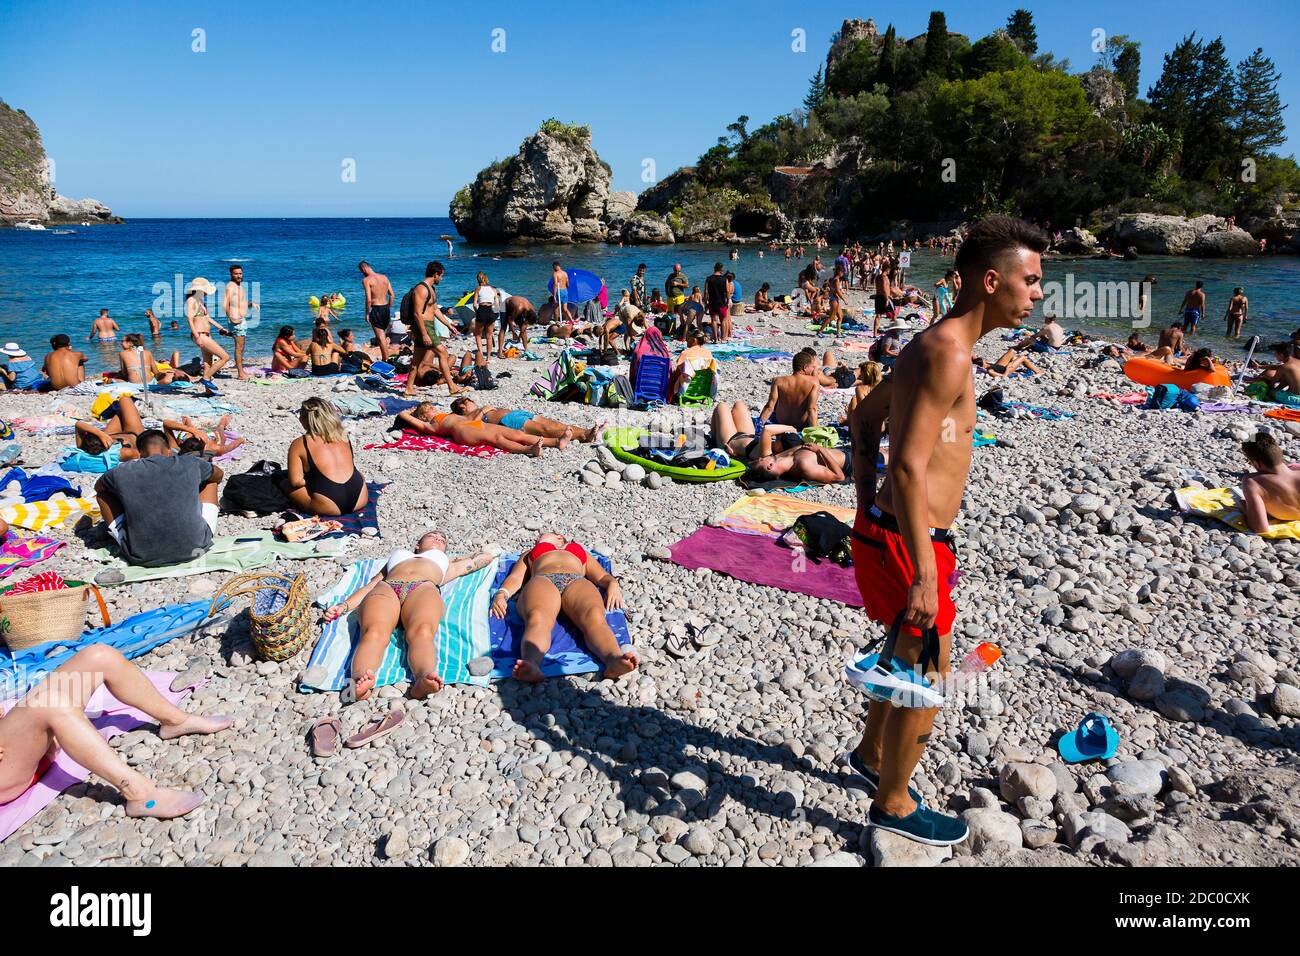 Sicilia, Italia. Los turistas se agolpan en la playa de Spiaggia Isola Bella en un cálido día soleado. Foto de stock